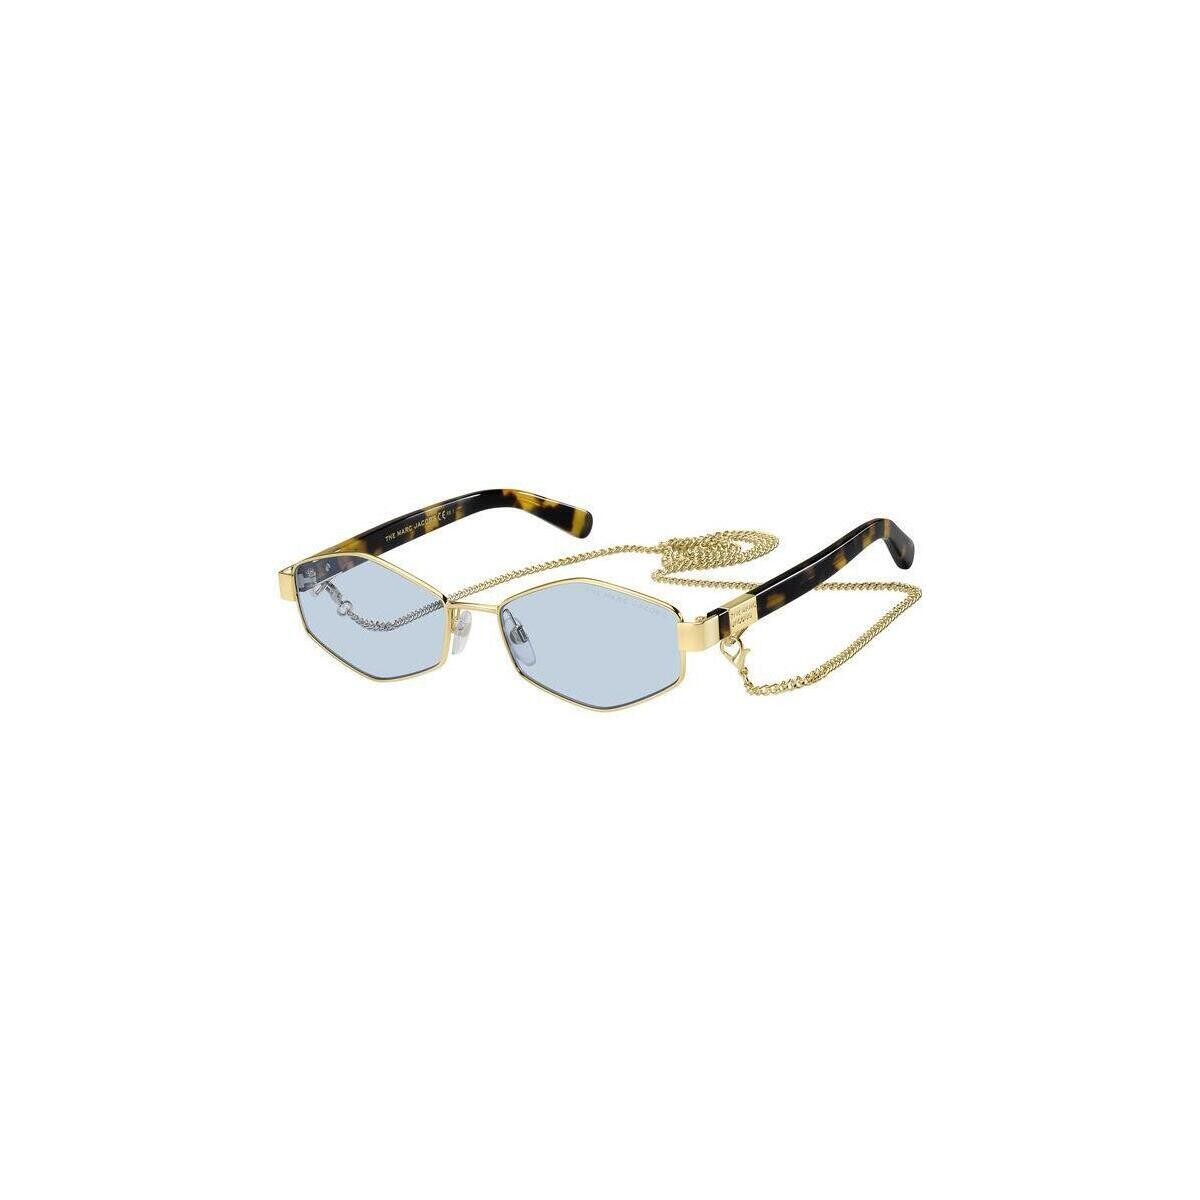 Orologi & Gioielli Donna Occhiali da sole Marc Jacobs MARC 496/S Occhiali da sole, Oro/Azzurro, 55 mm Oro